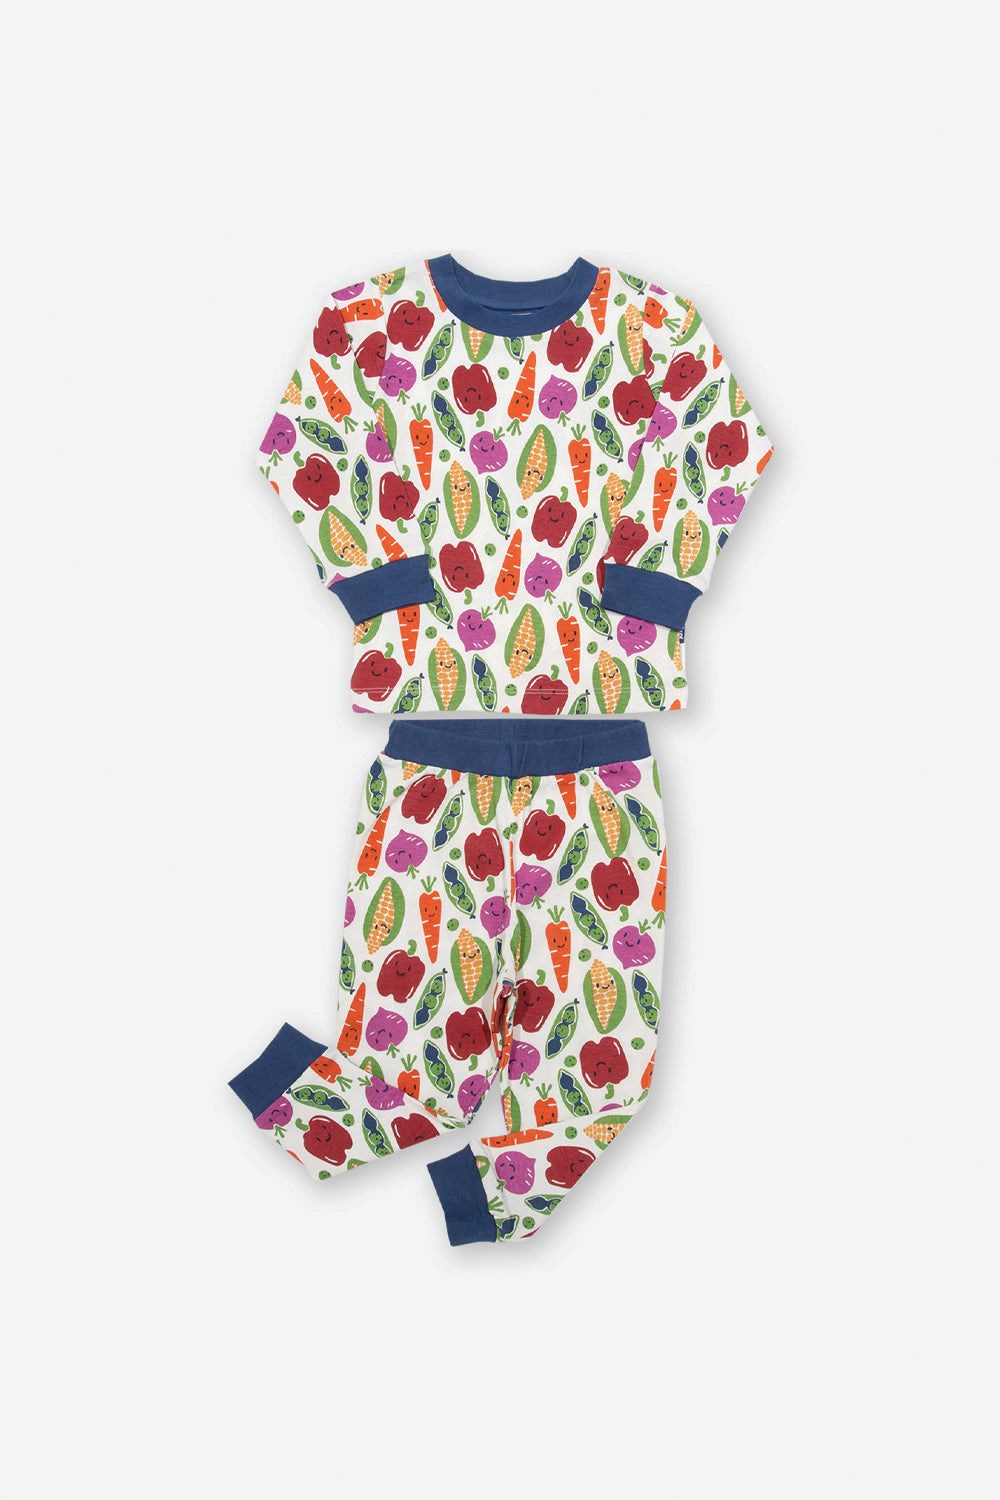 Veggie Baby/Kids Pyjamas -